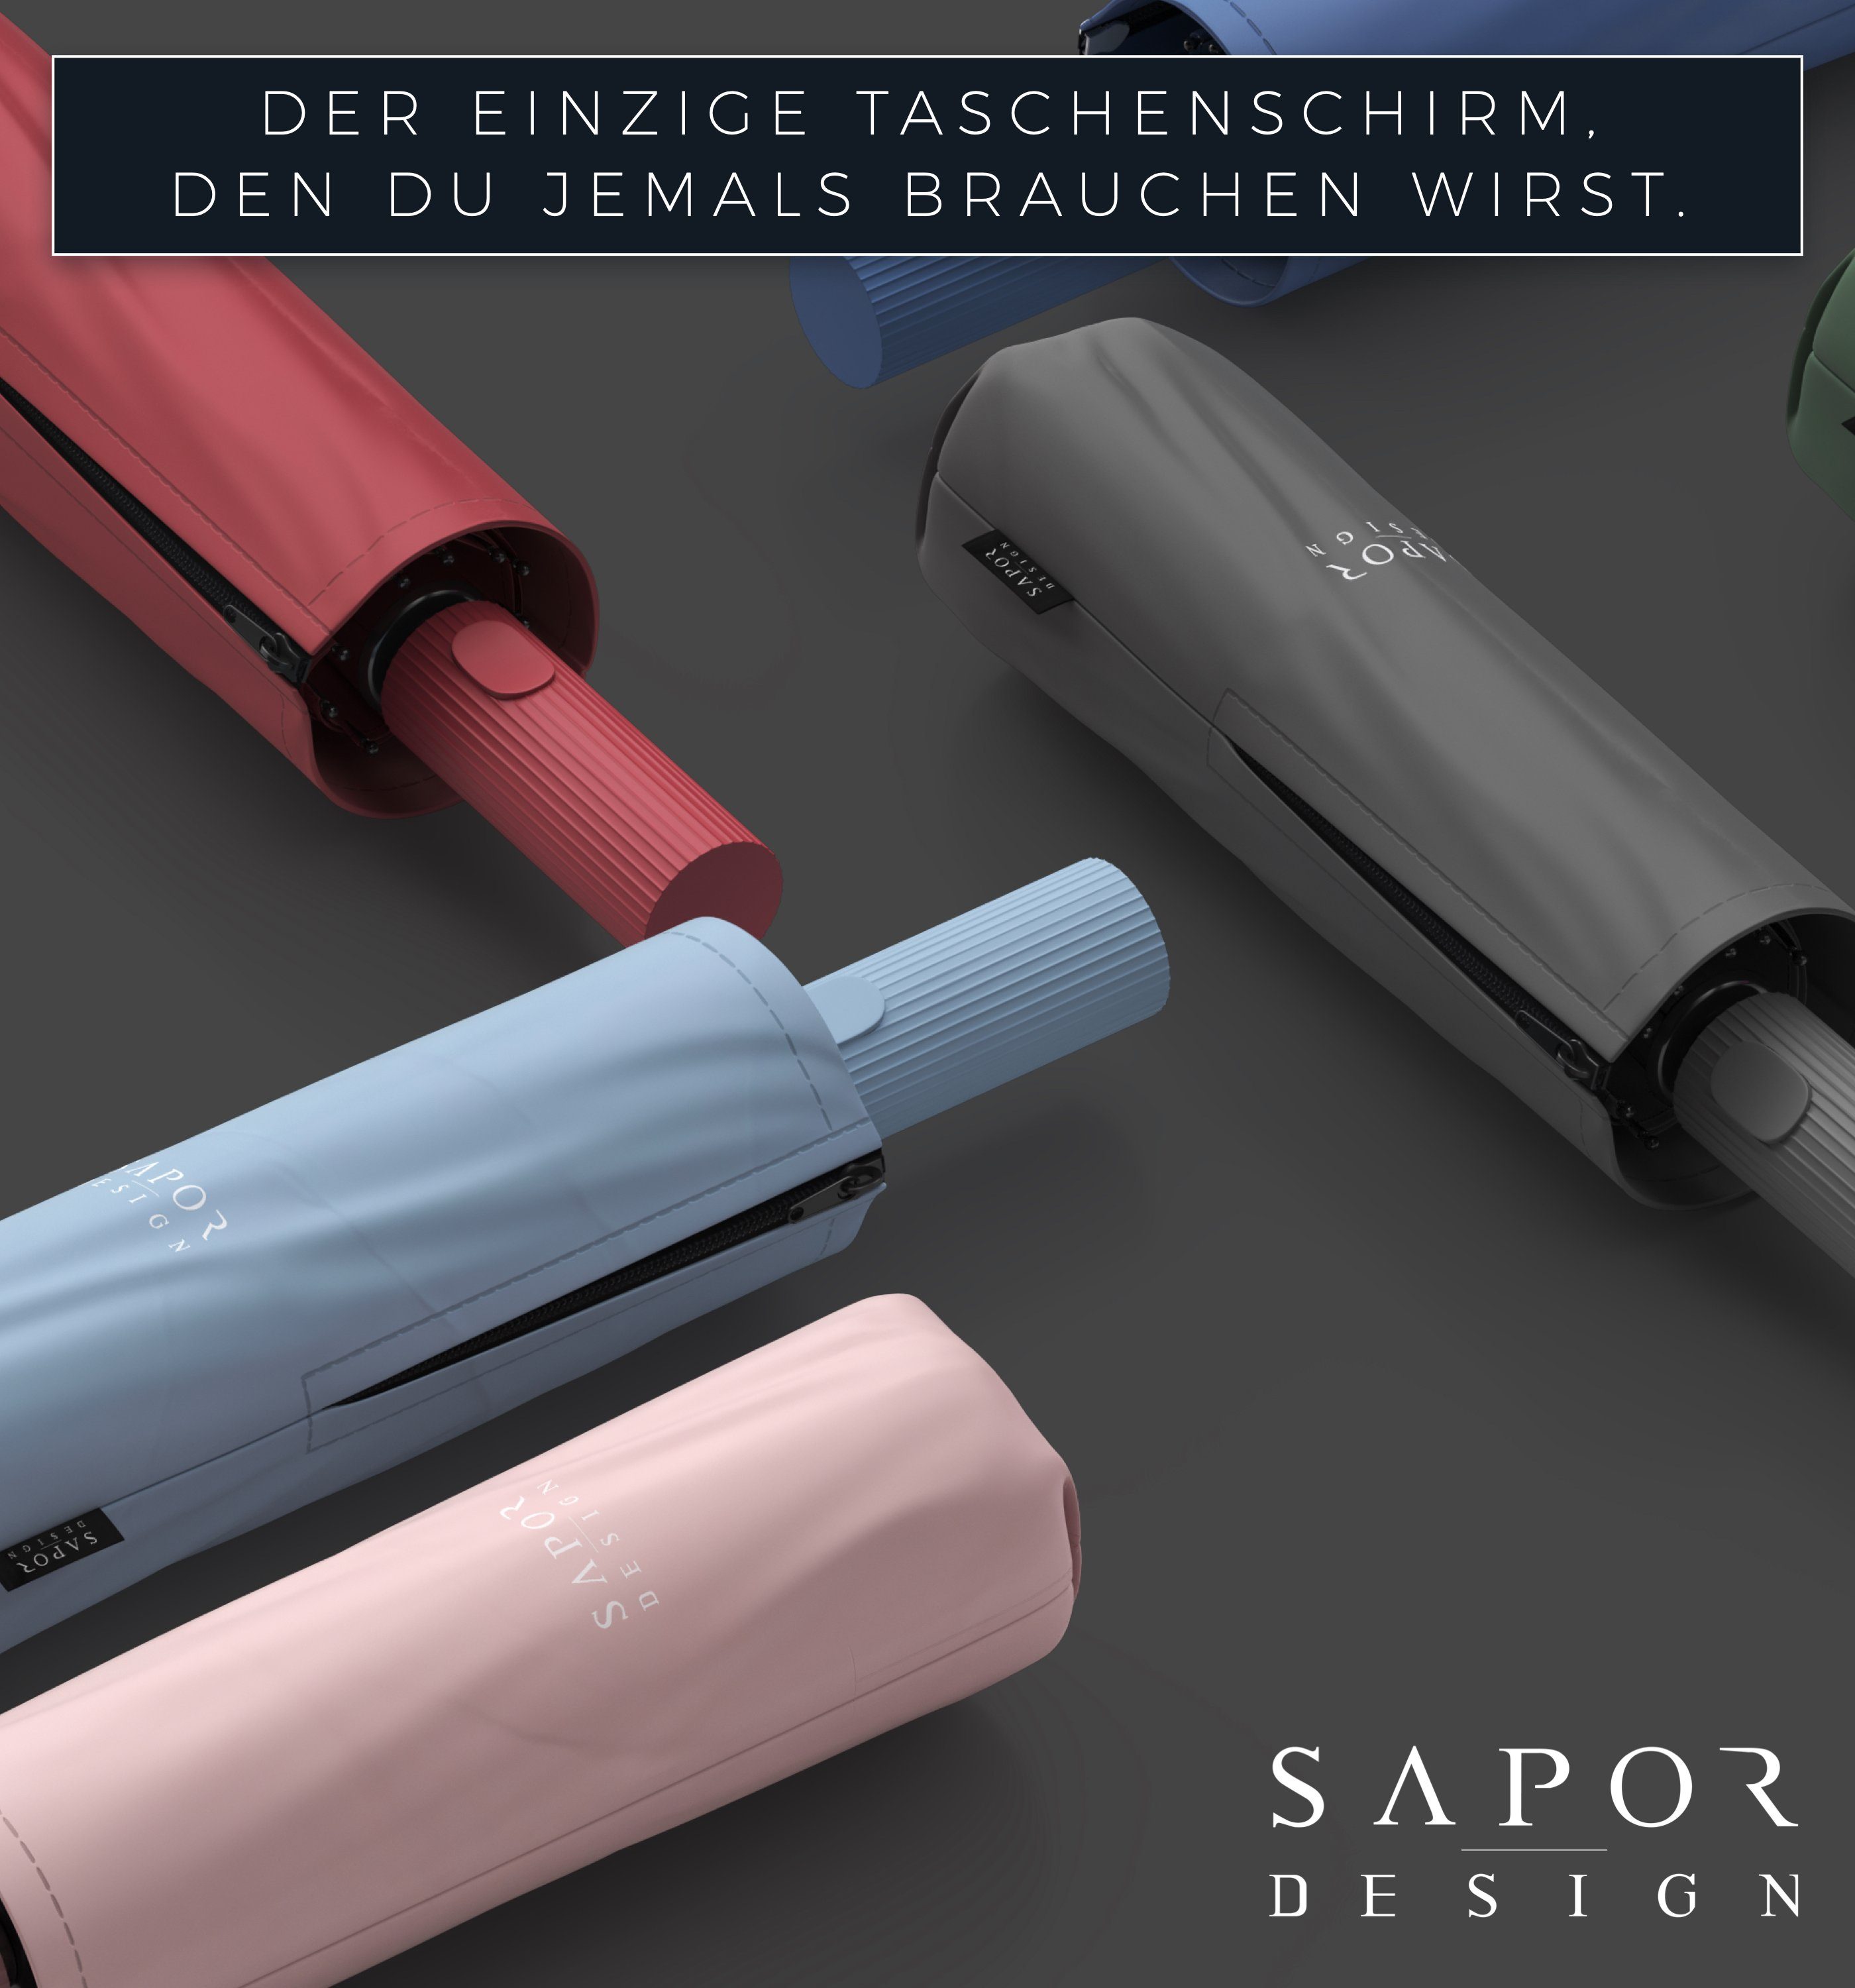 Schwarz Sapor ICONIC Taschenregenschirm Design Taschenschirm Sapor Design